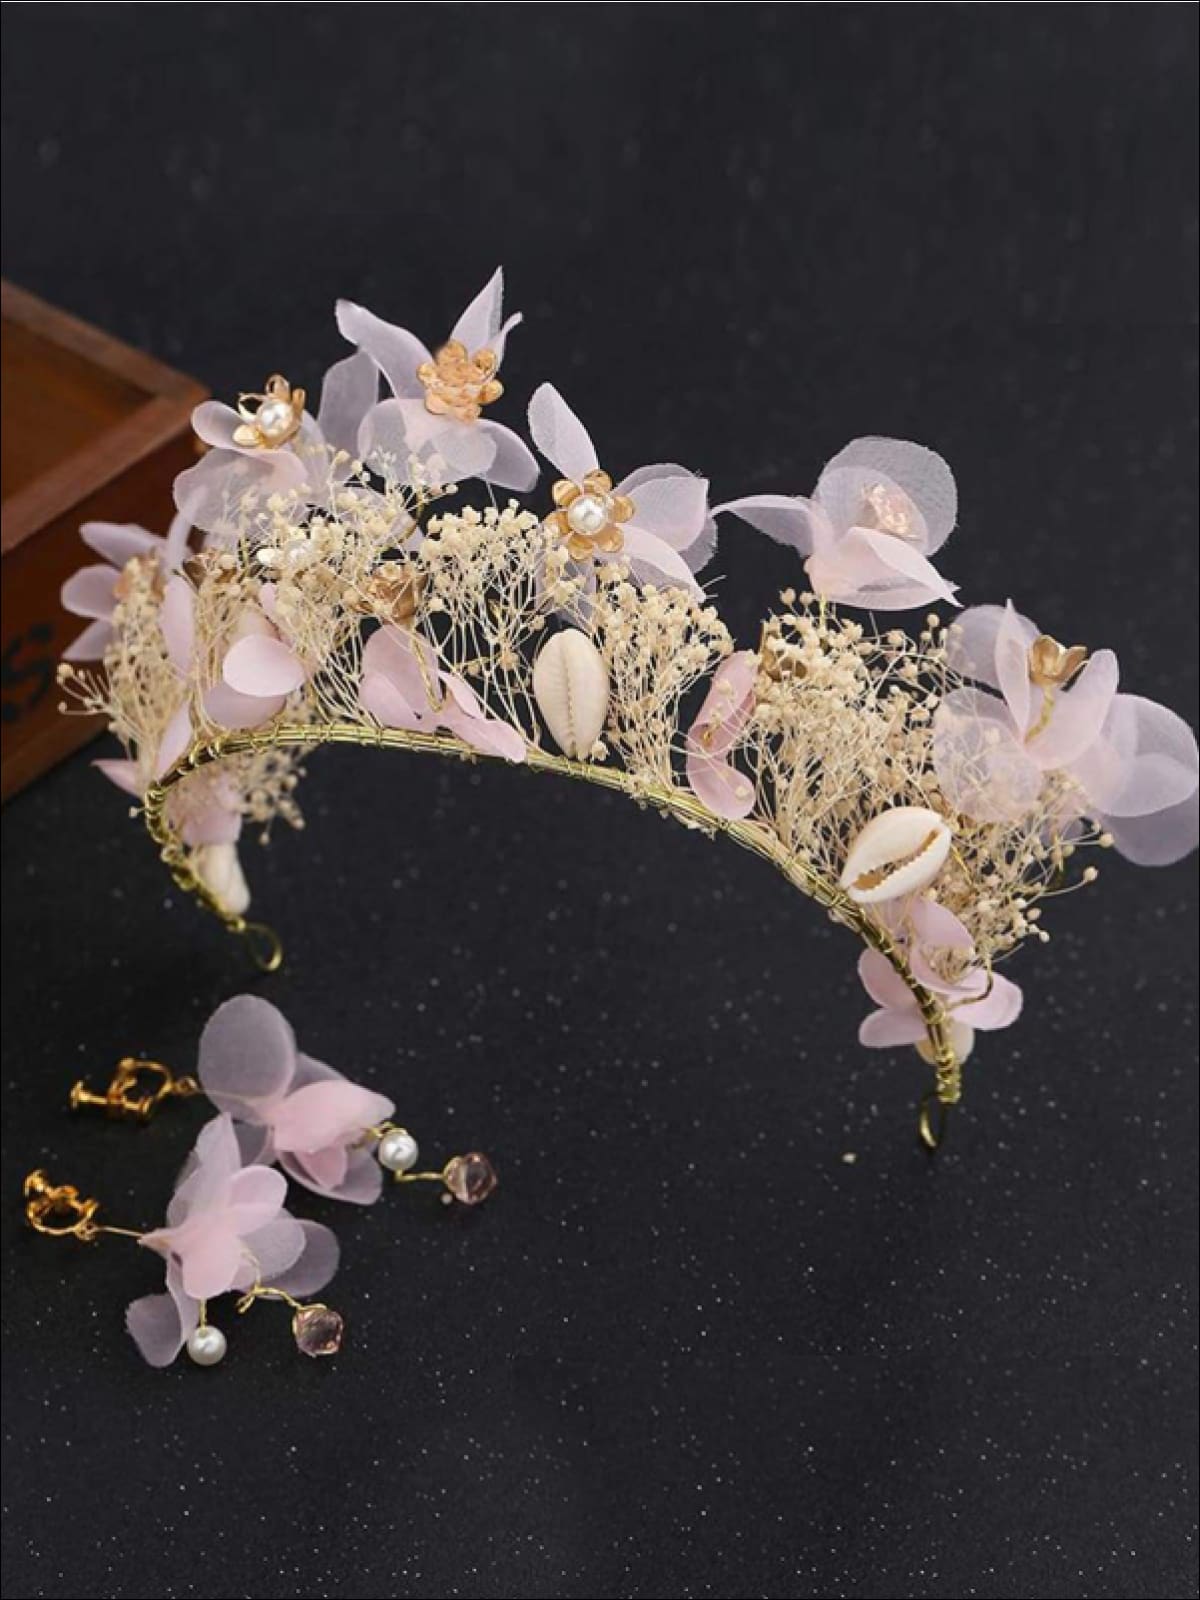 Flower Andamp; Seashell Mermaid Inspired Halo Tiara Andamp; Earrings ...